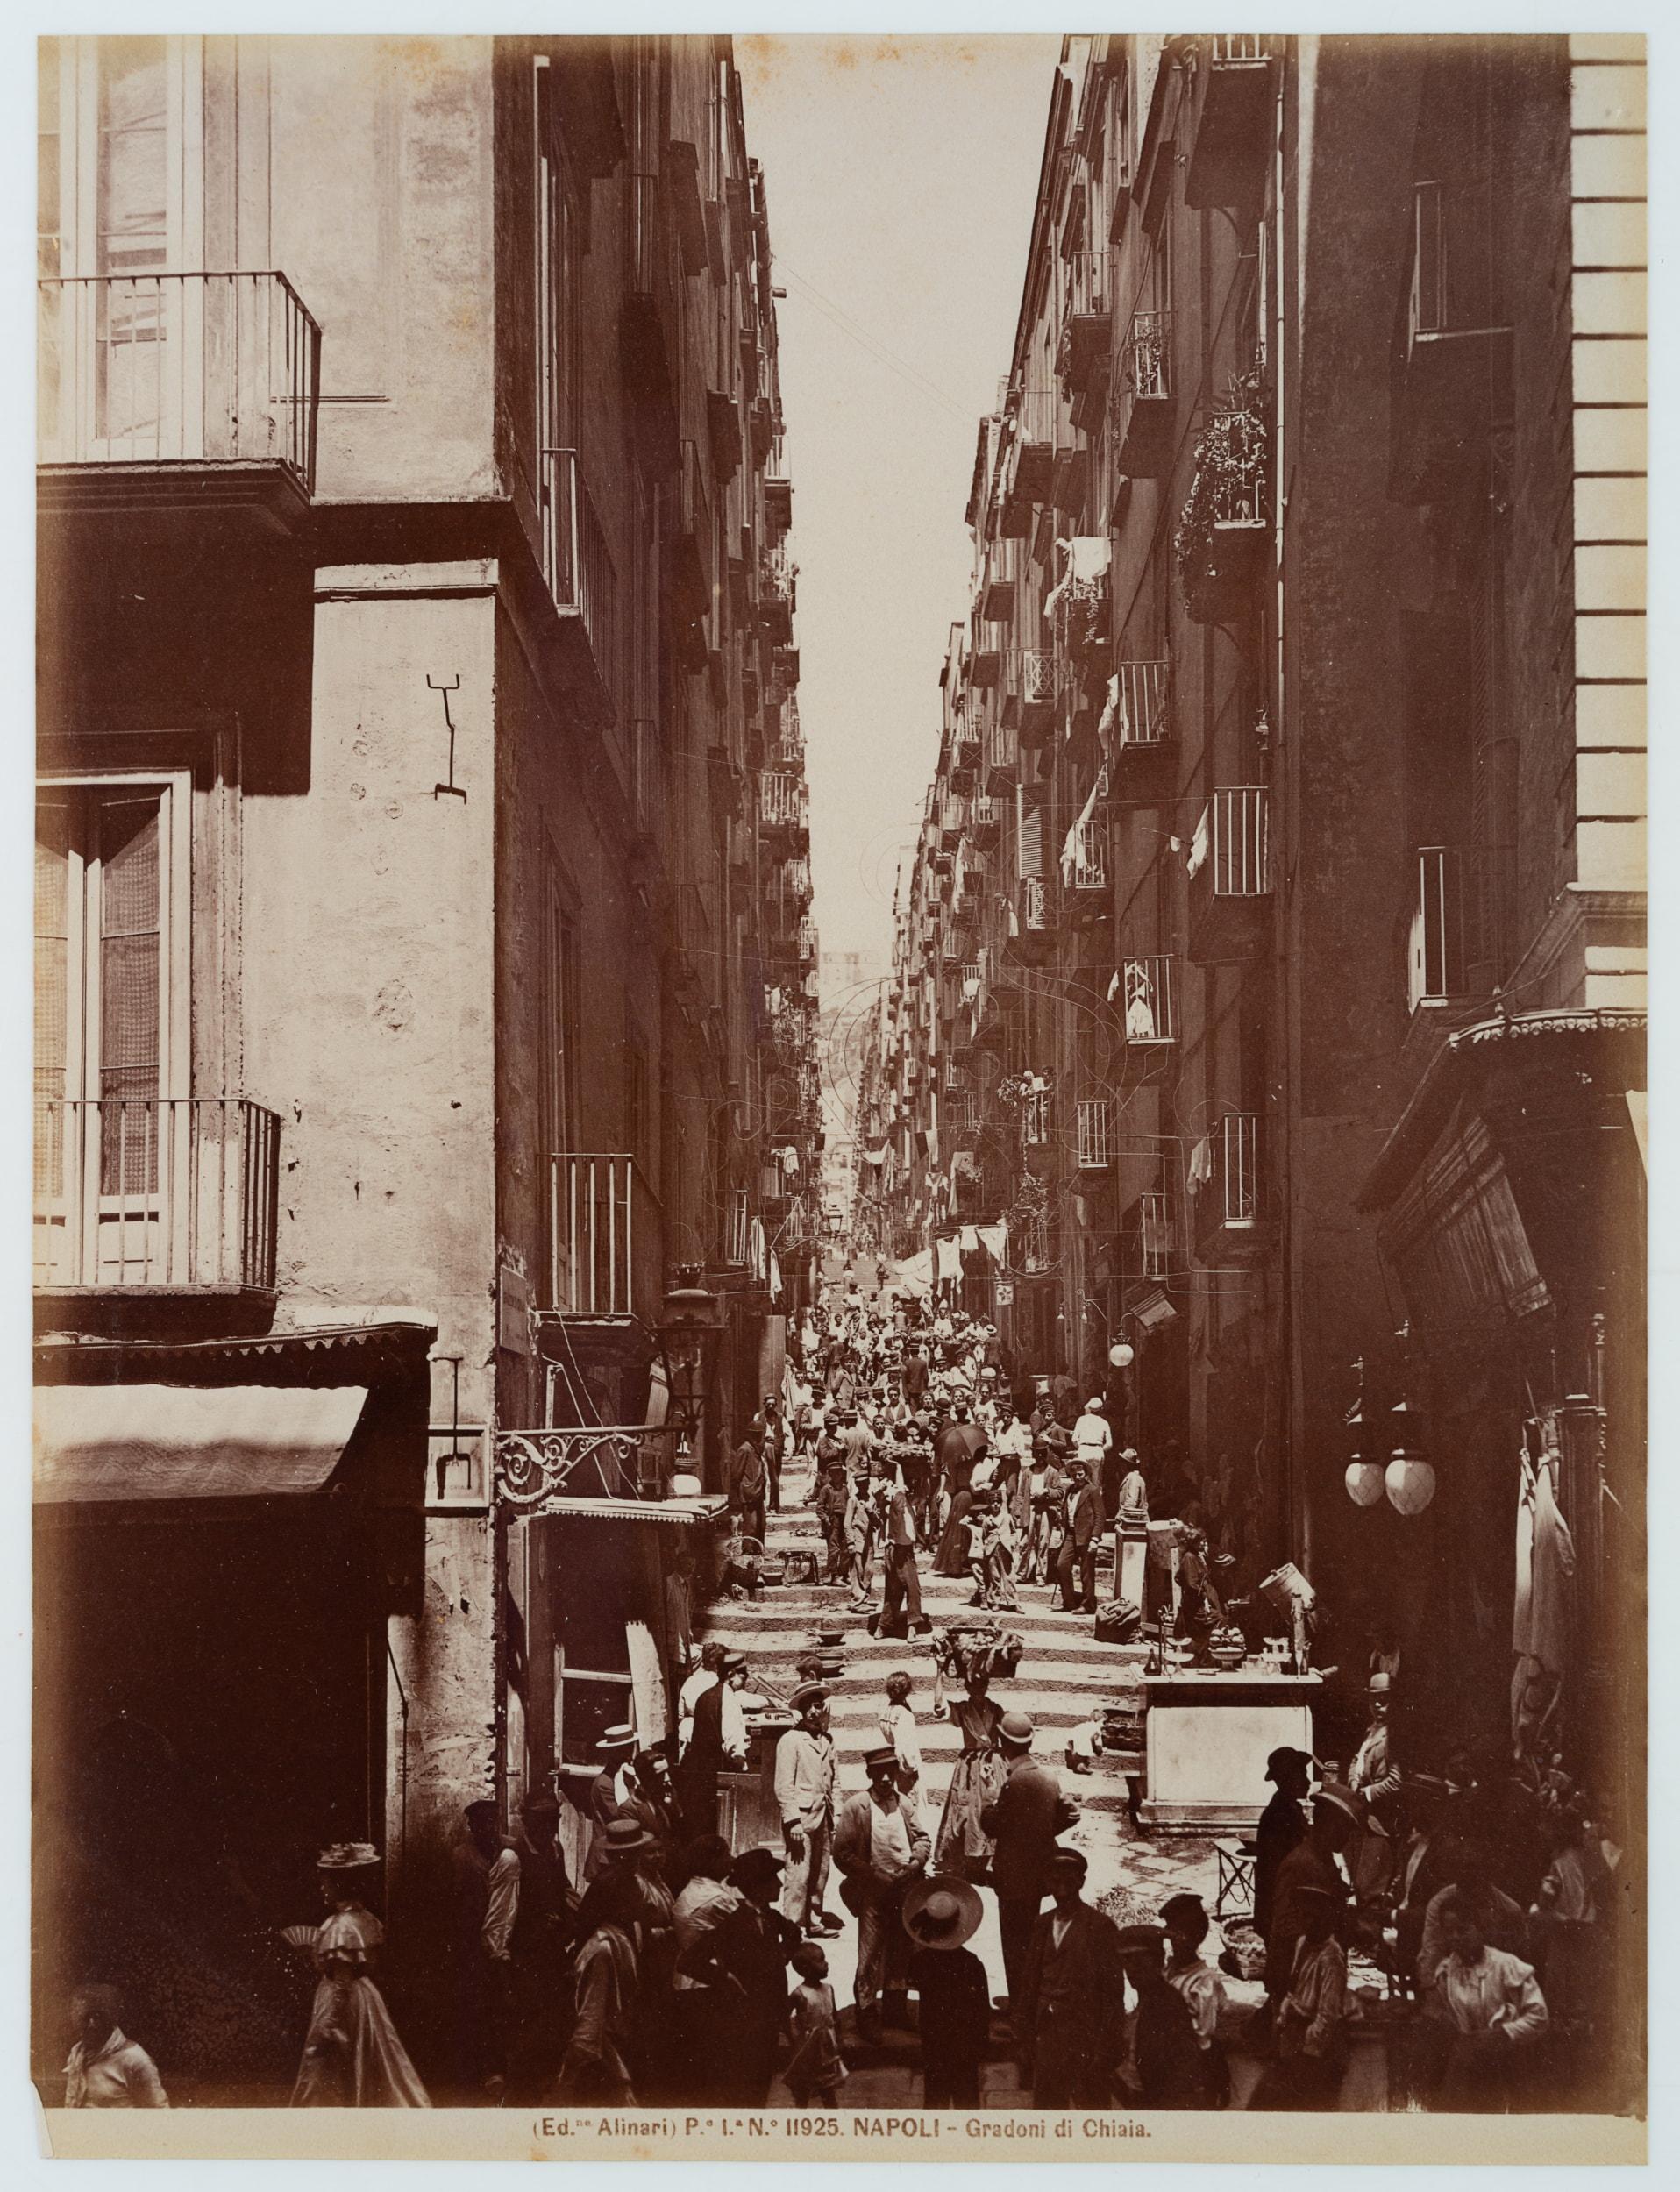 Gradoni di Chiaia, Neapel - Photograph by Fratelli Alinari